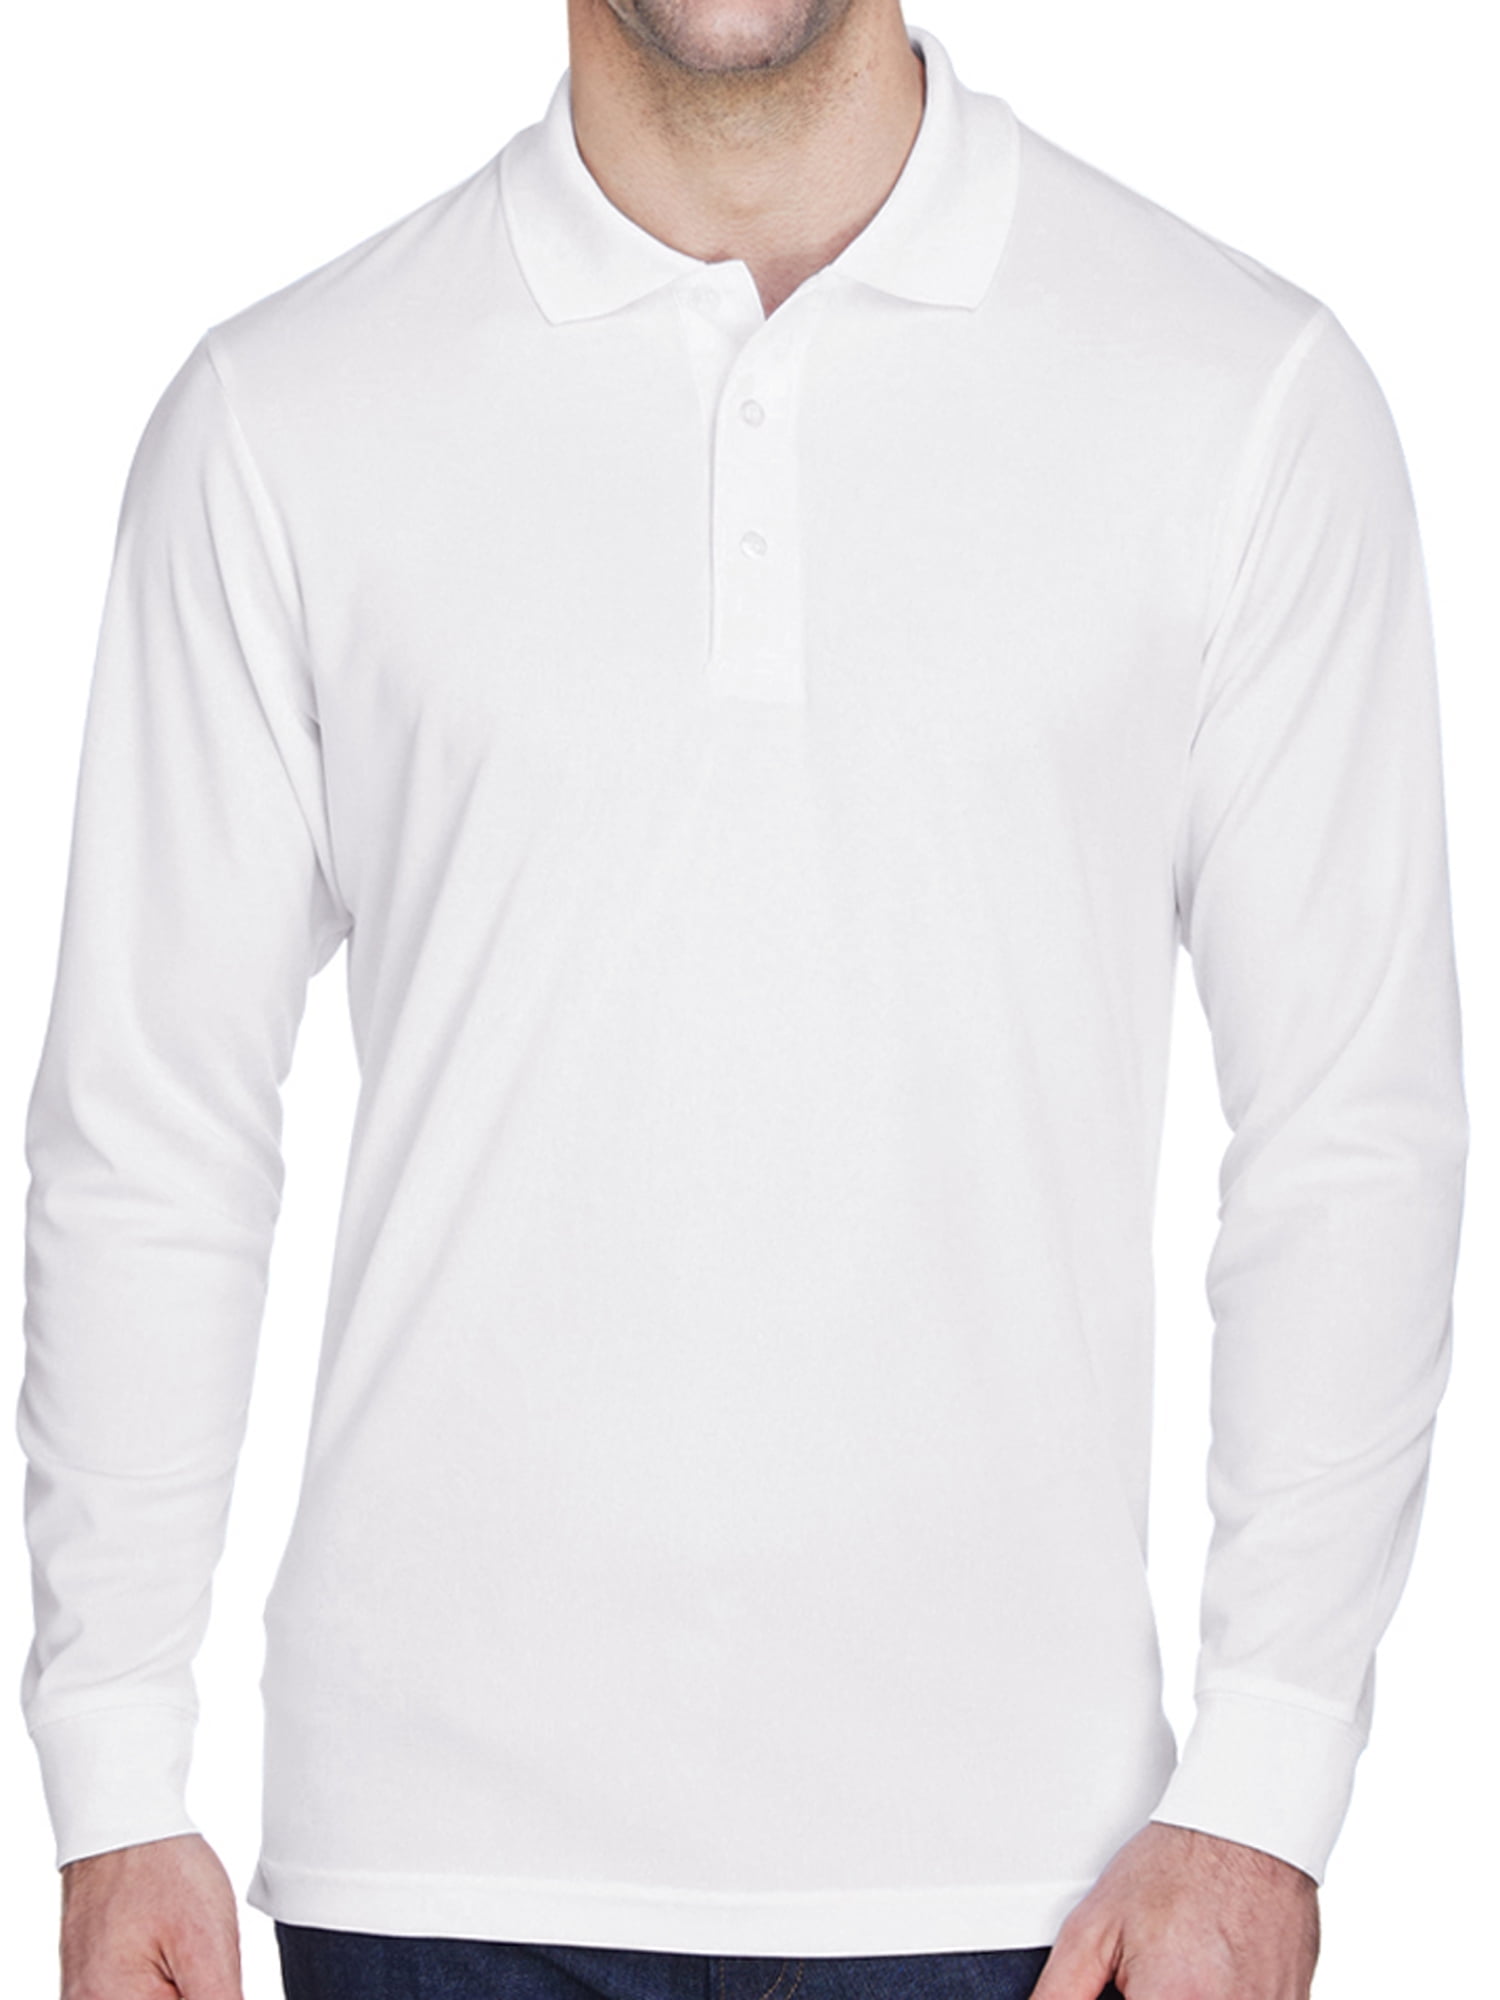 long-sleeved polo shirt